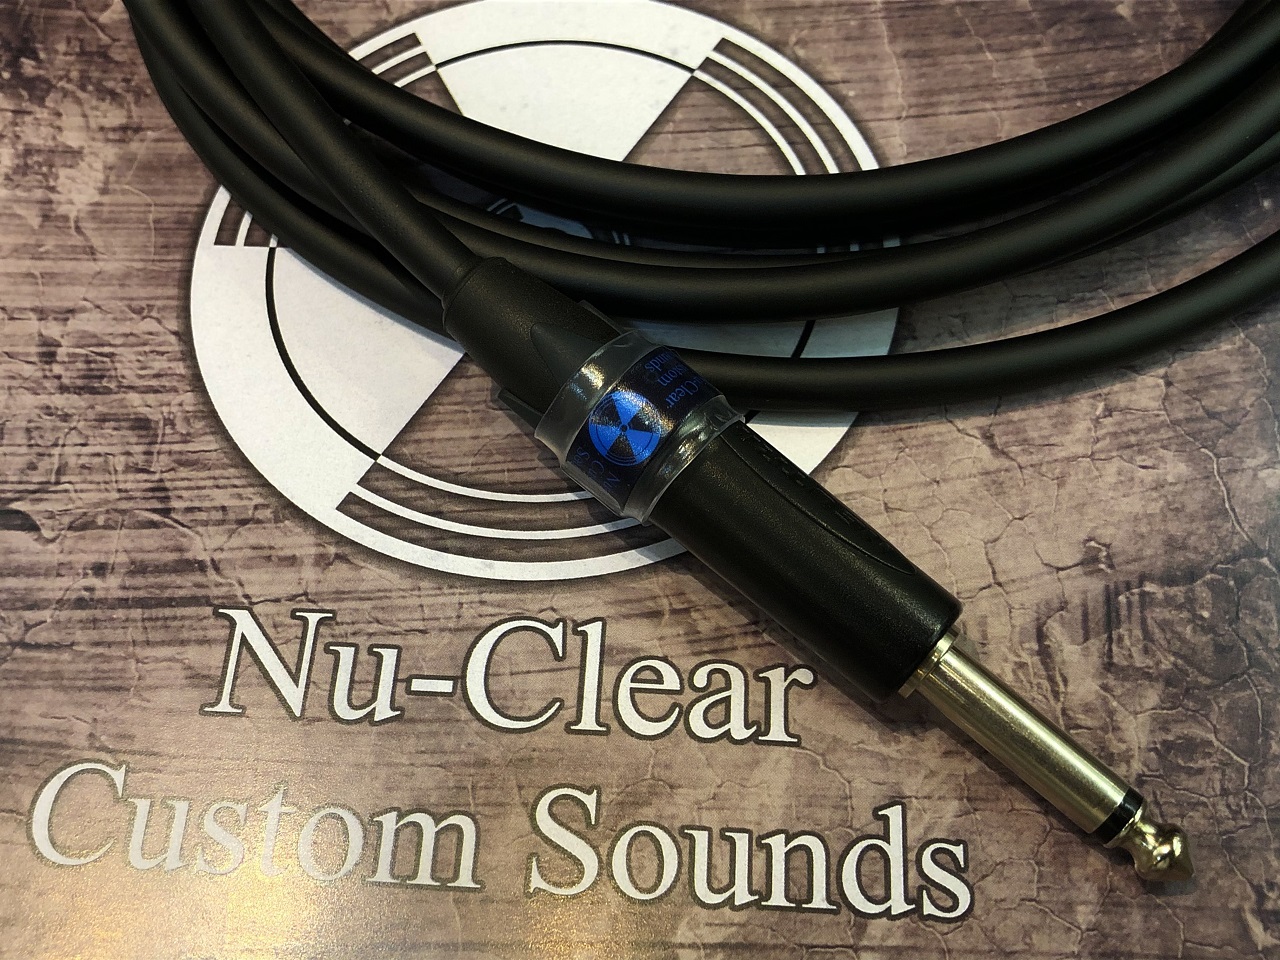 お取り寄せ商品 Nu-Clear Custom SALE Sounds XC01 QUANTUM 5.0mSL イーグルス感謝祭 登場大人気アイテム ポイント5倍 2021 26 23:59まで 11